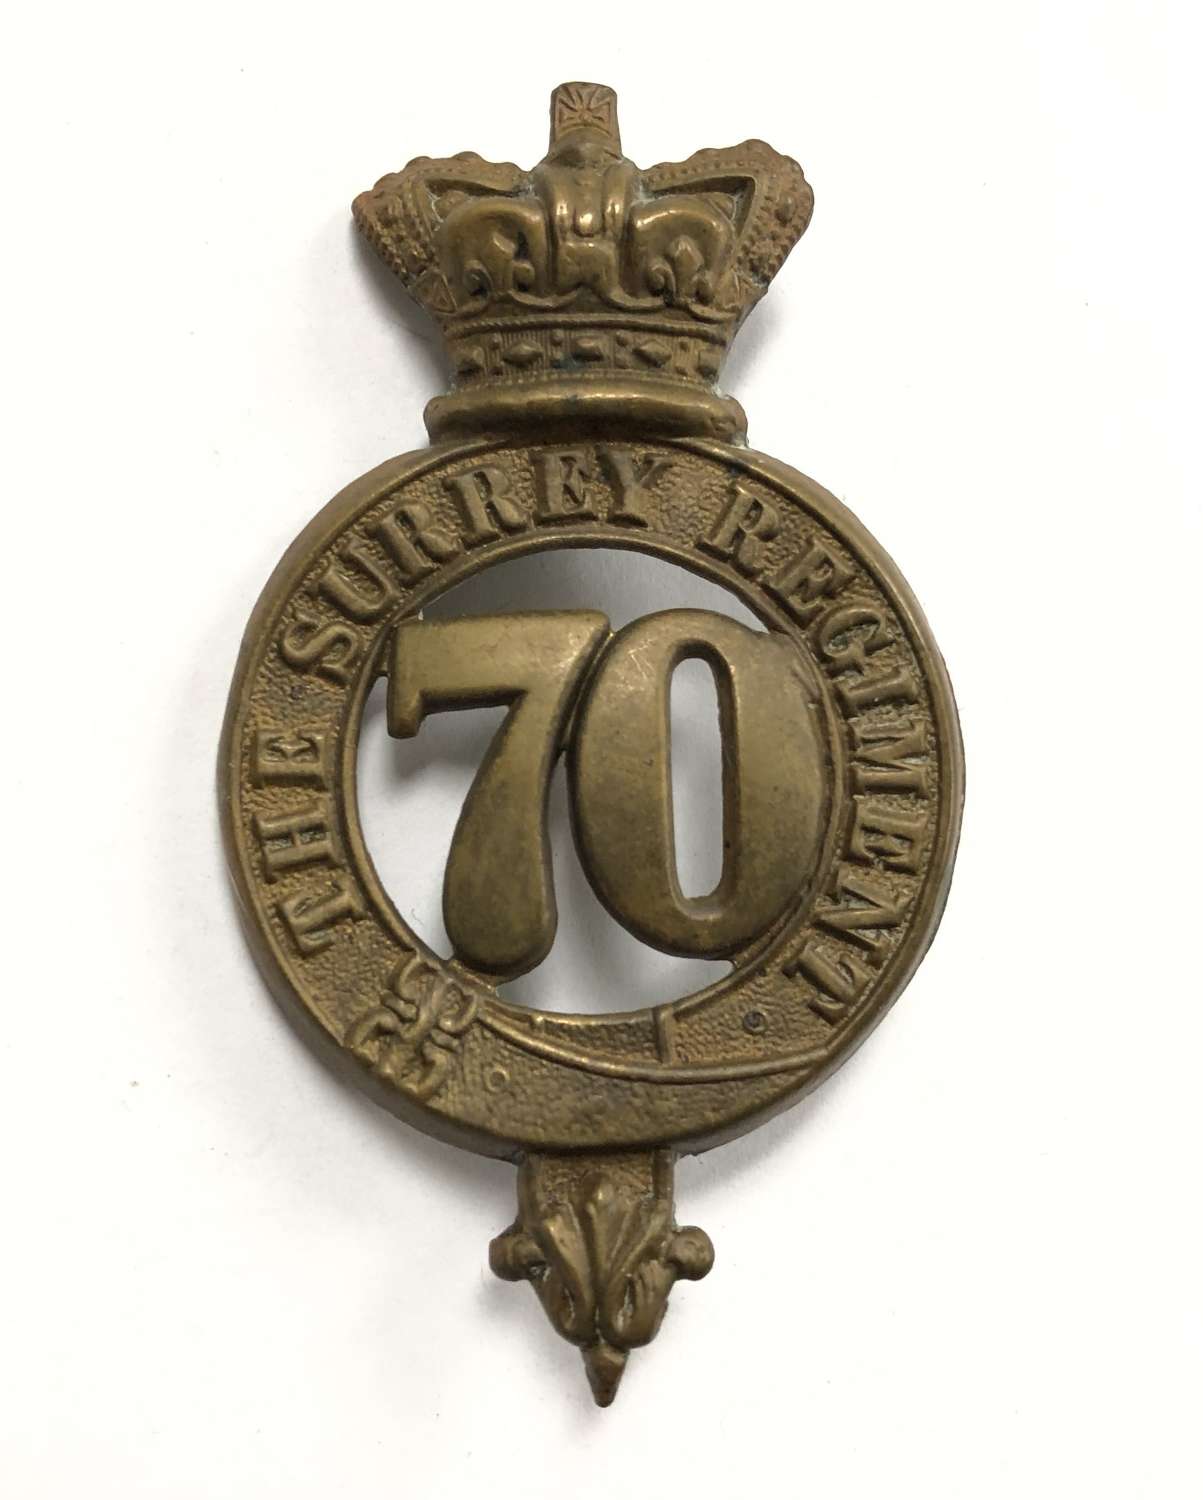 70th (The Surrey) Regiment of Foot Victorian glengarry badge c1874-81